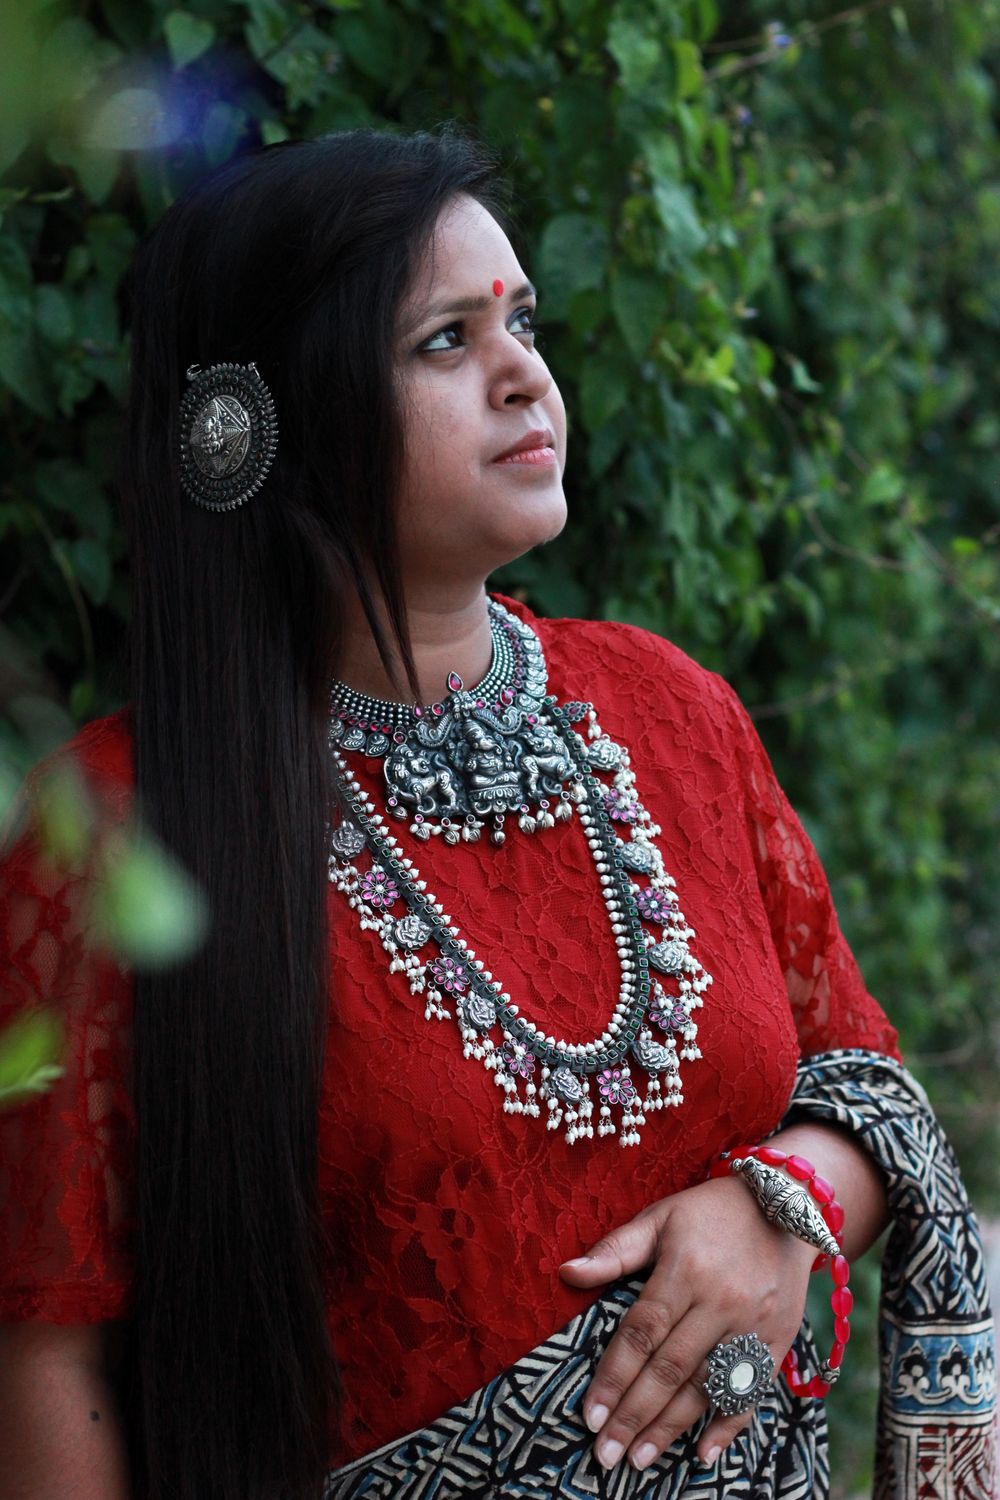 Photo By Srikalakriti - Jewellery